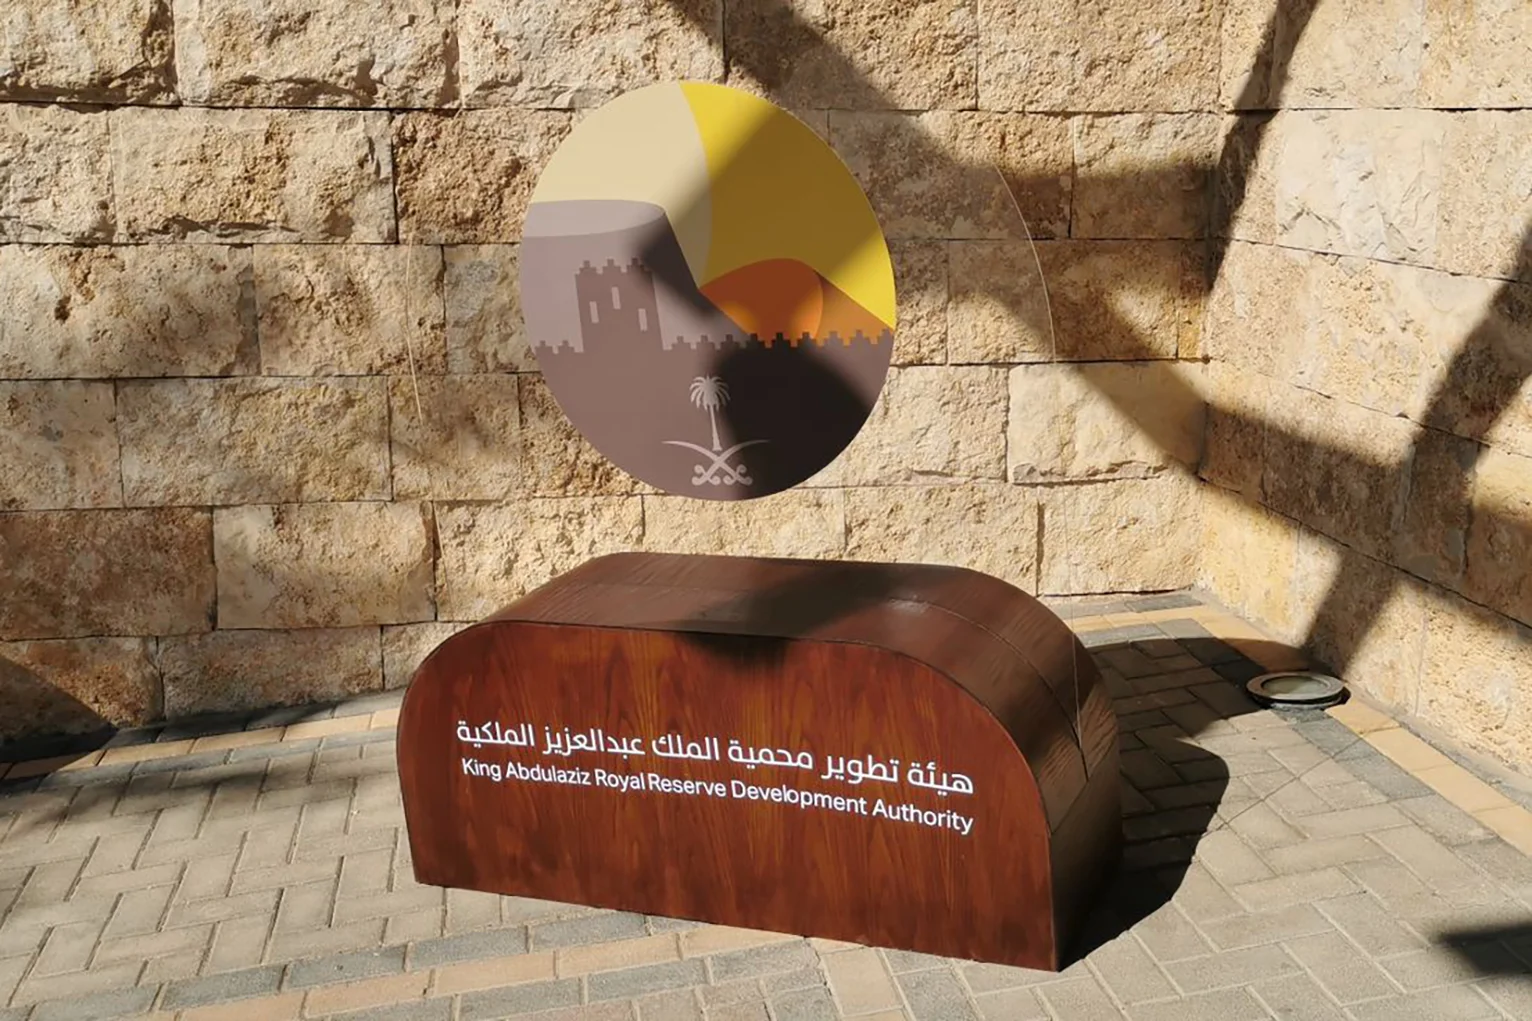 اليوم السنوي لهيئة تطوير محمية الملك عبدالعزيز الملكية